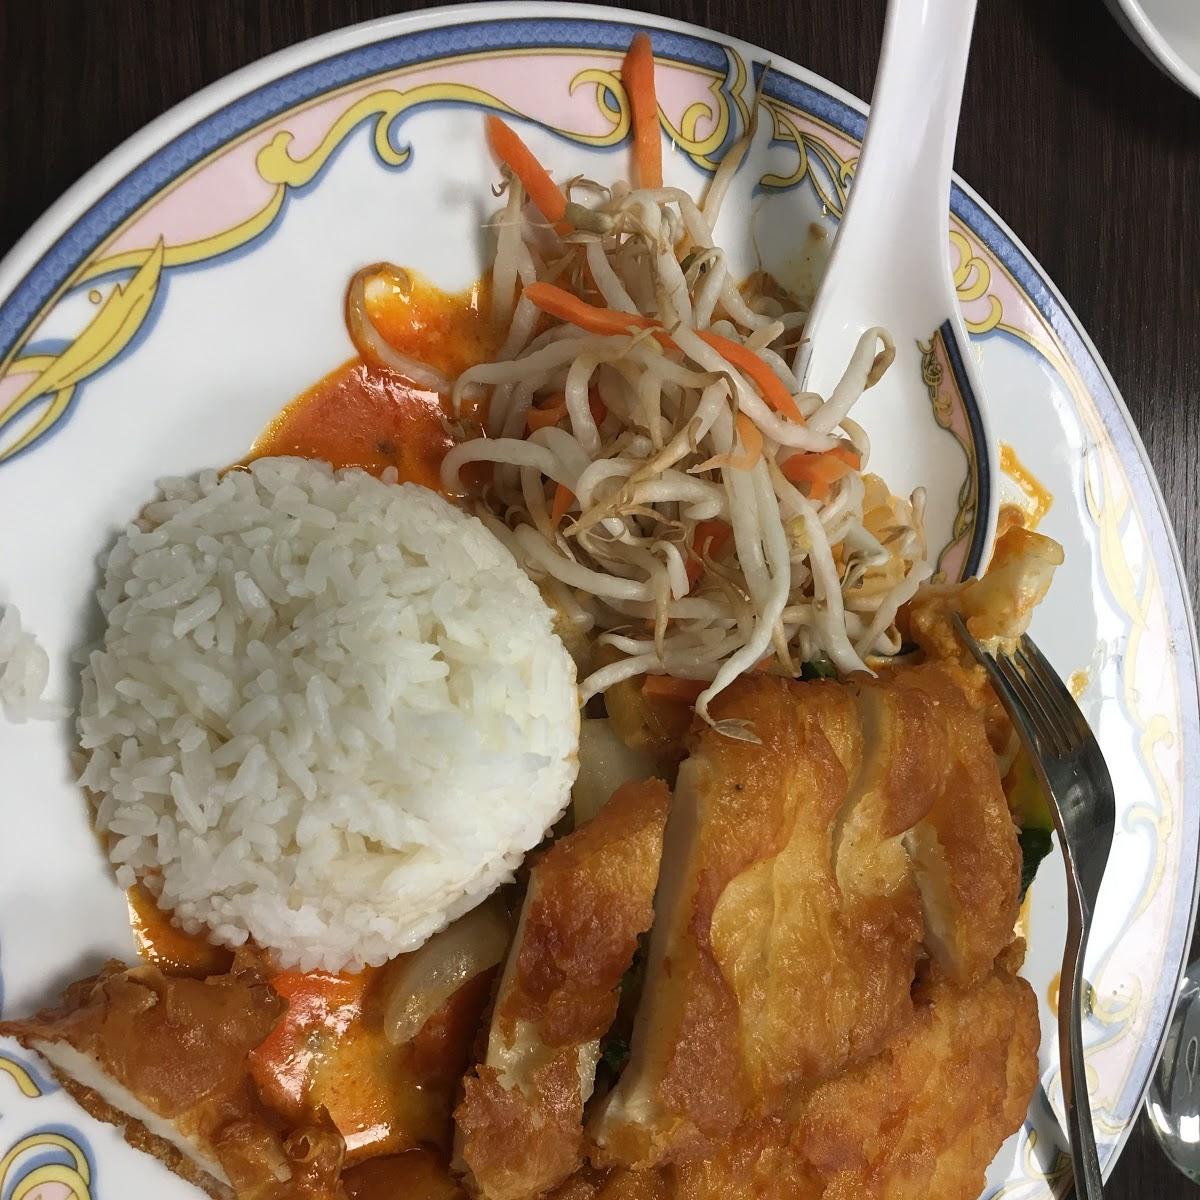 Restaurant "Thailändische Spezialitäten" in Sögel